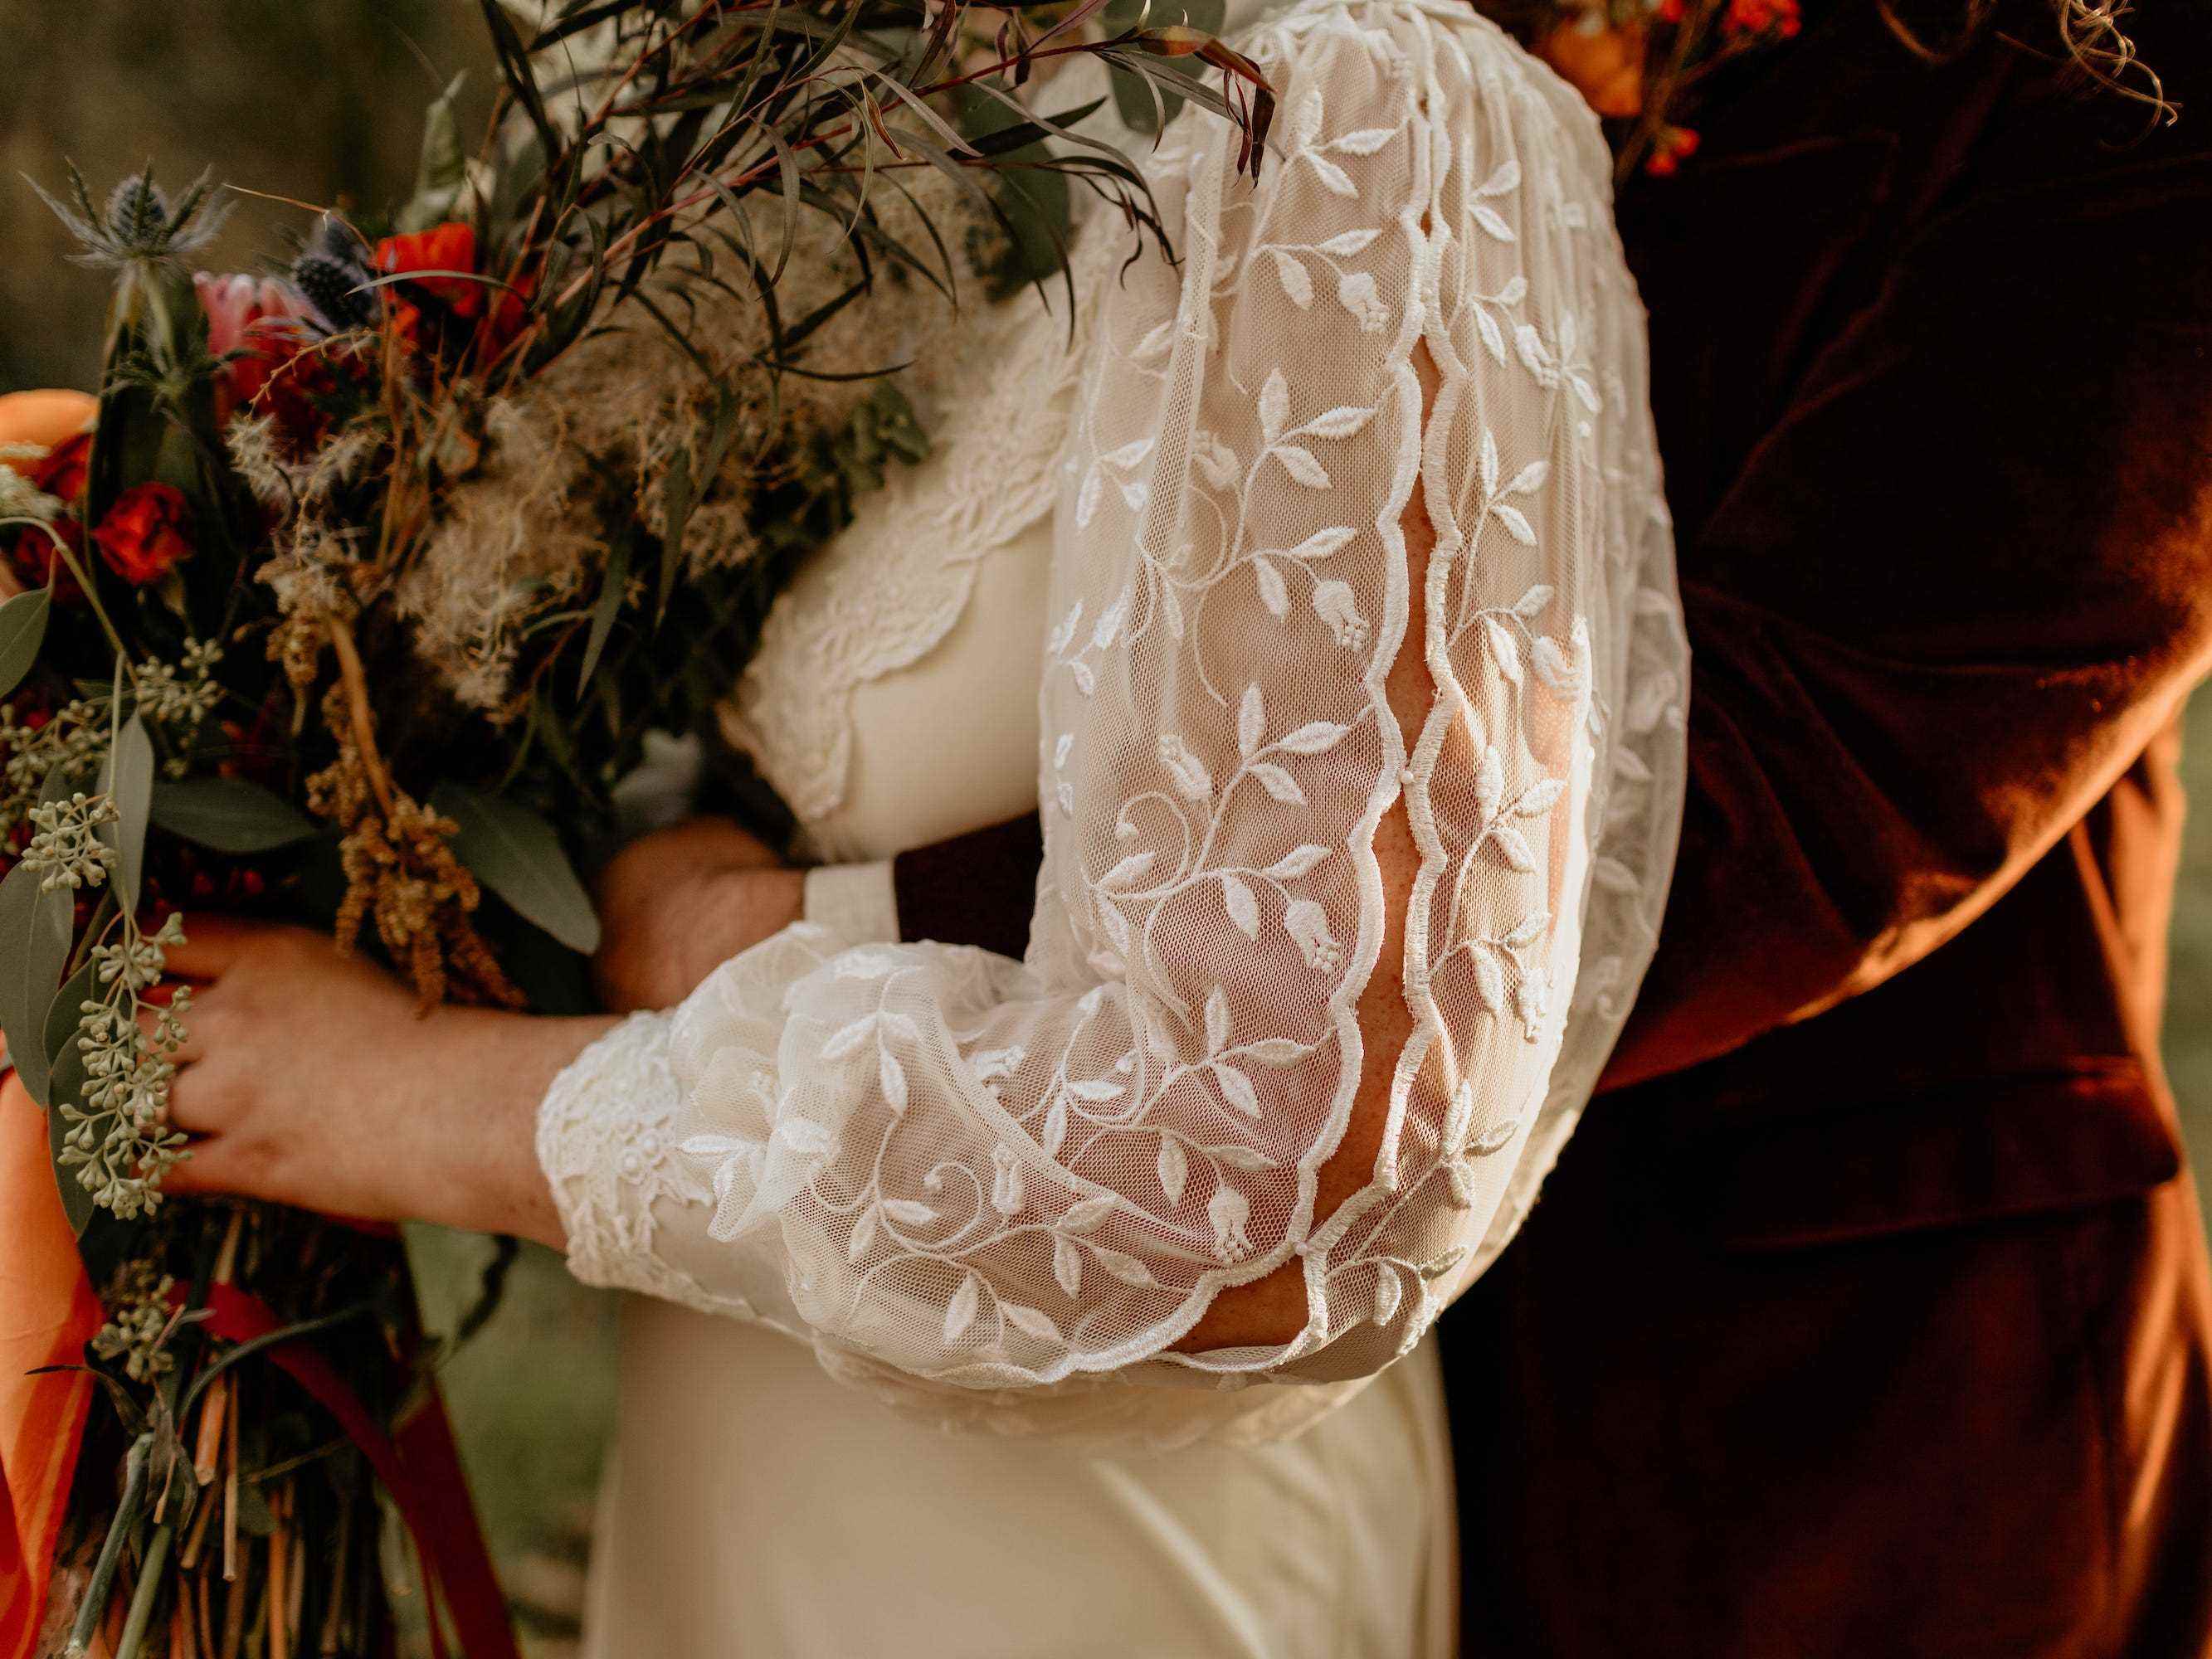 Vandergriff fügte Perlen aus dem Hochzeitskleid ihrer Mutter an ihren Ärmeln hinzu.